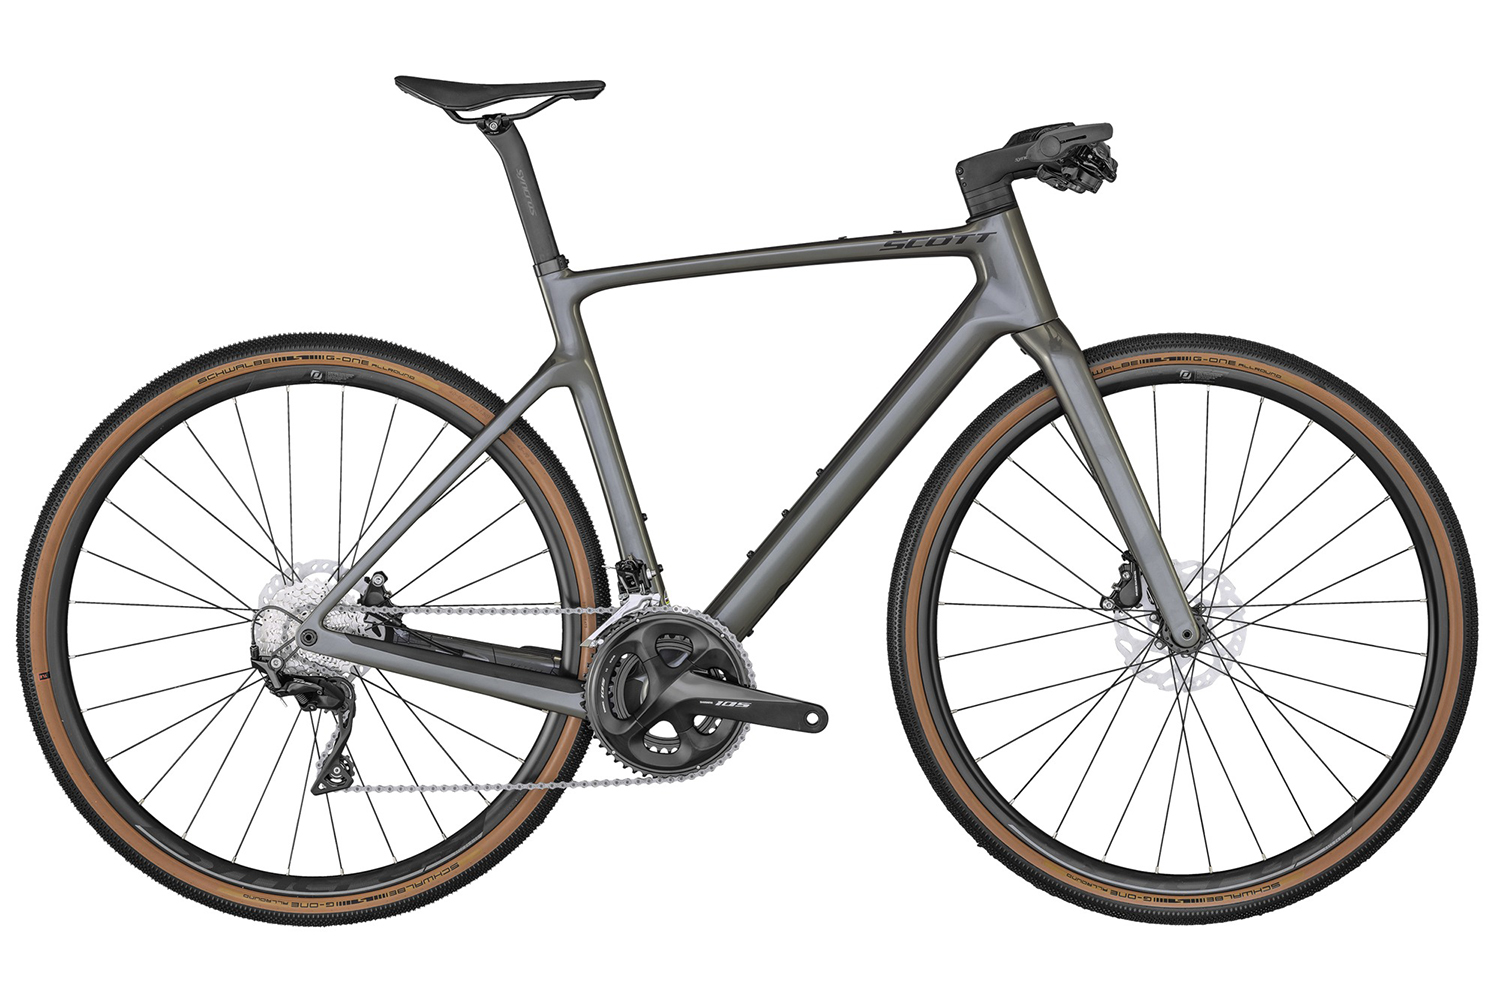  Отзывы о Городском велосипеде Scott Metrix 10 2020